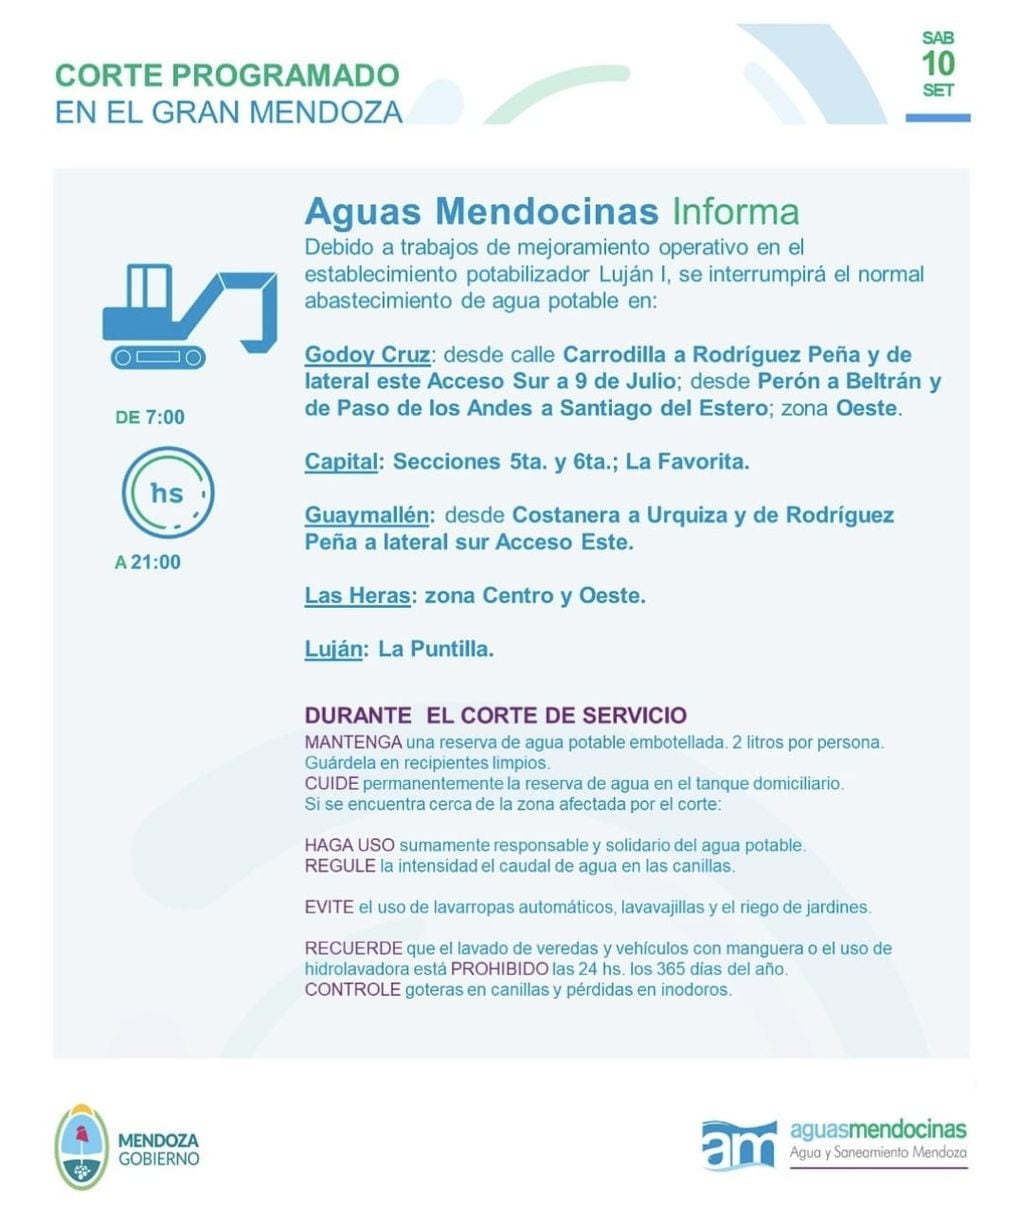 Aguas Mendocinas Informa que el sábado de 7 a 21 habrá cortes de servicio en varias localidades